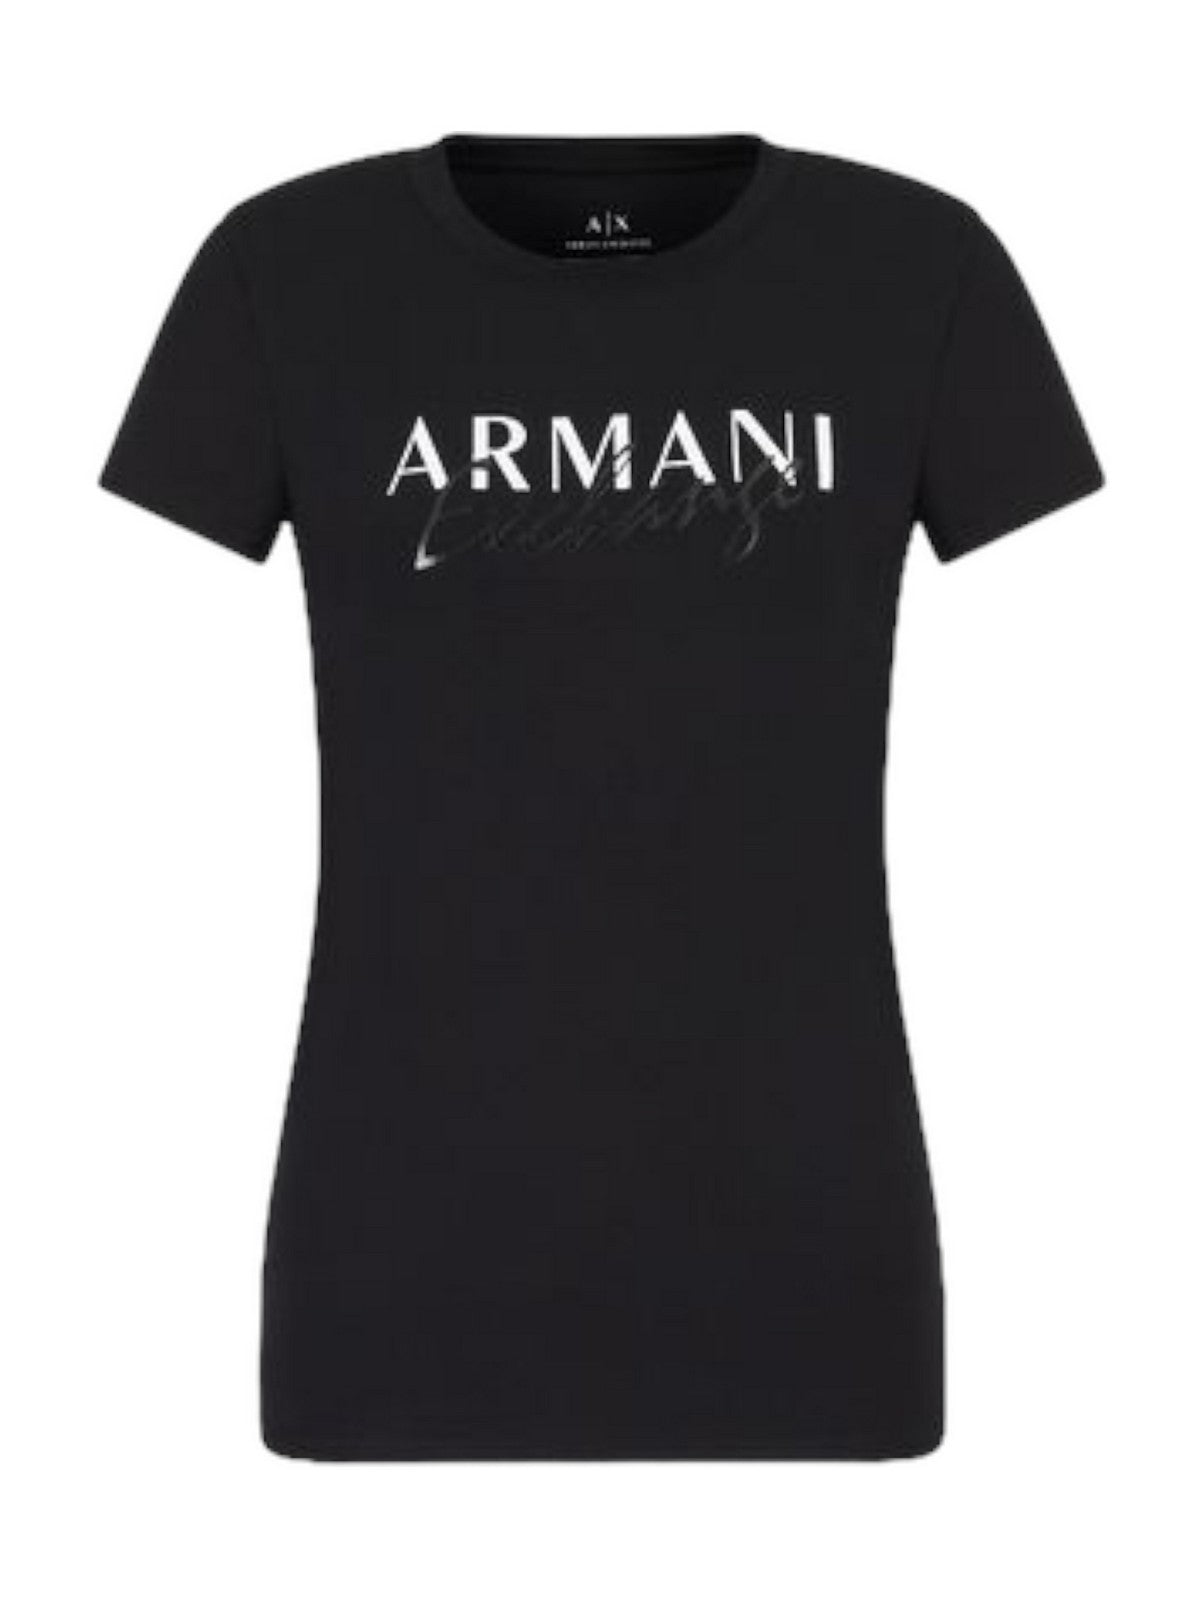 ARMANI EXCHANGE T-Shirt e Polo Donna  3RYTBK YJDTZ 1200 Nero